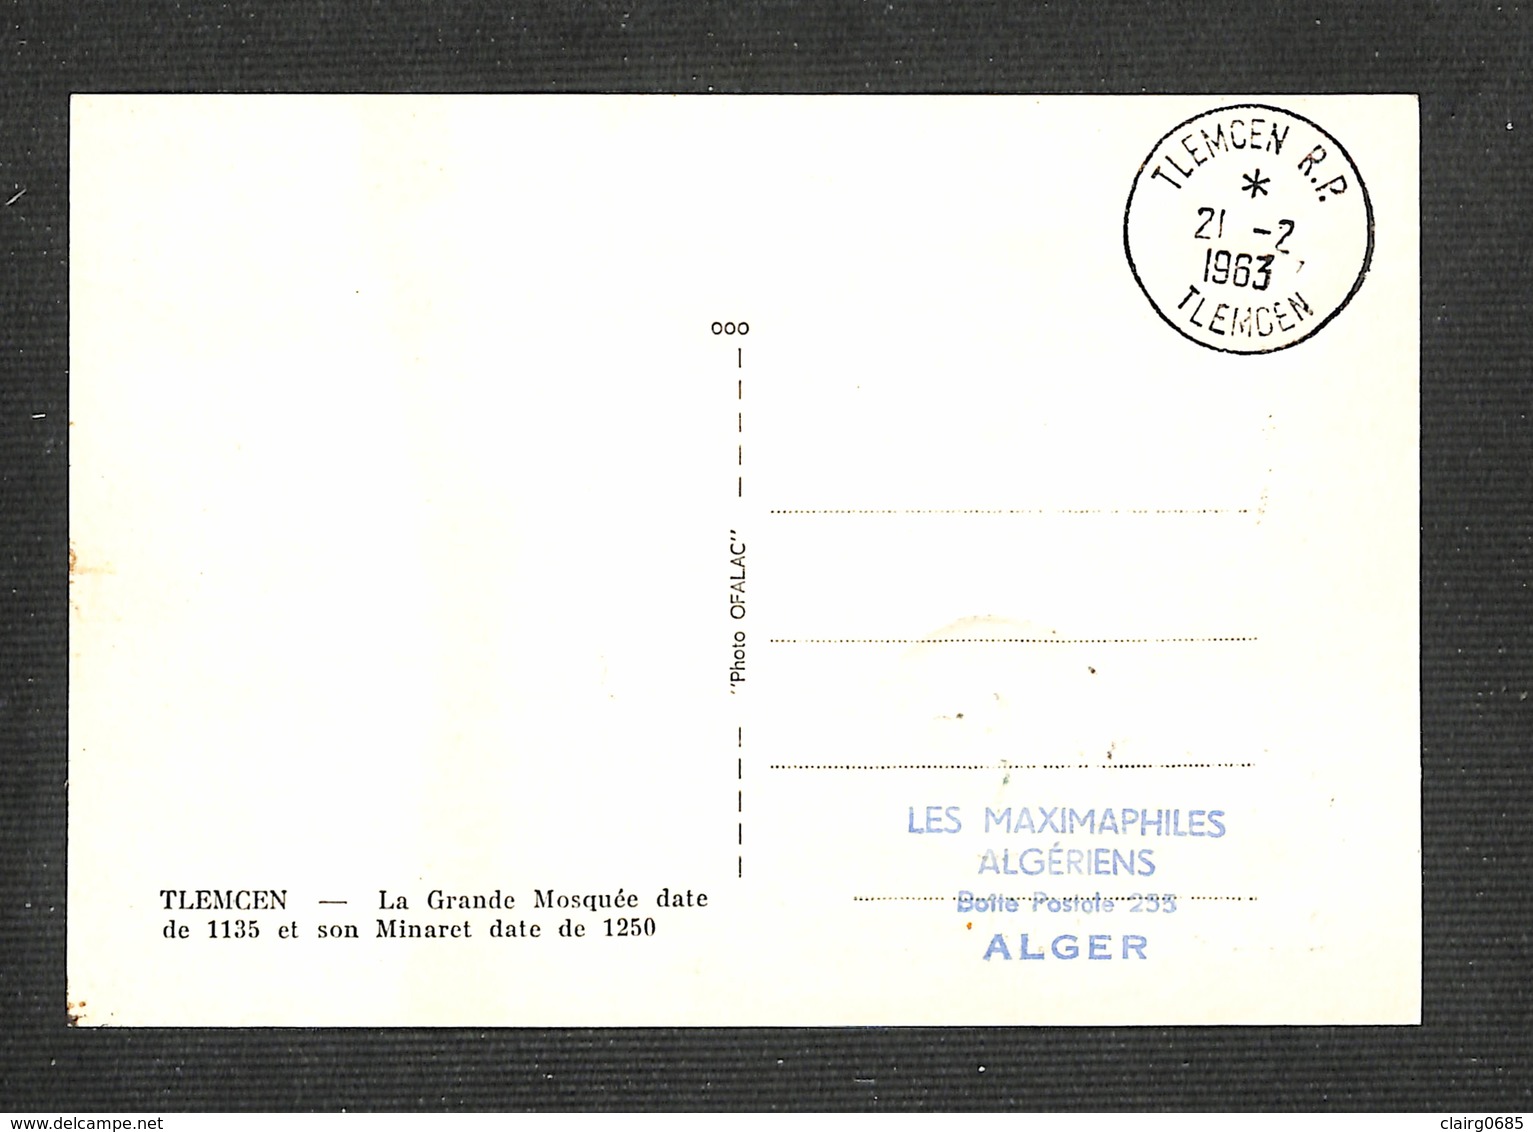 ALGÉRIE - Carte Maximum 1963 - TLEMCEN - La Grande Mosquée Date De 1135 Et Son Minaret Date De 1250 - 0,25 - Maximum Cards